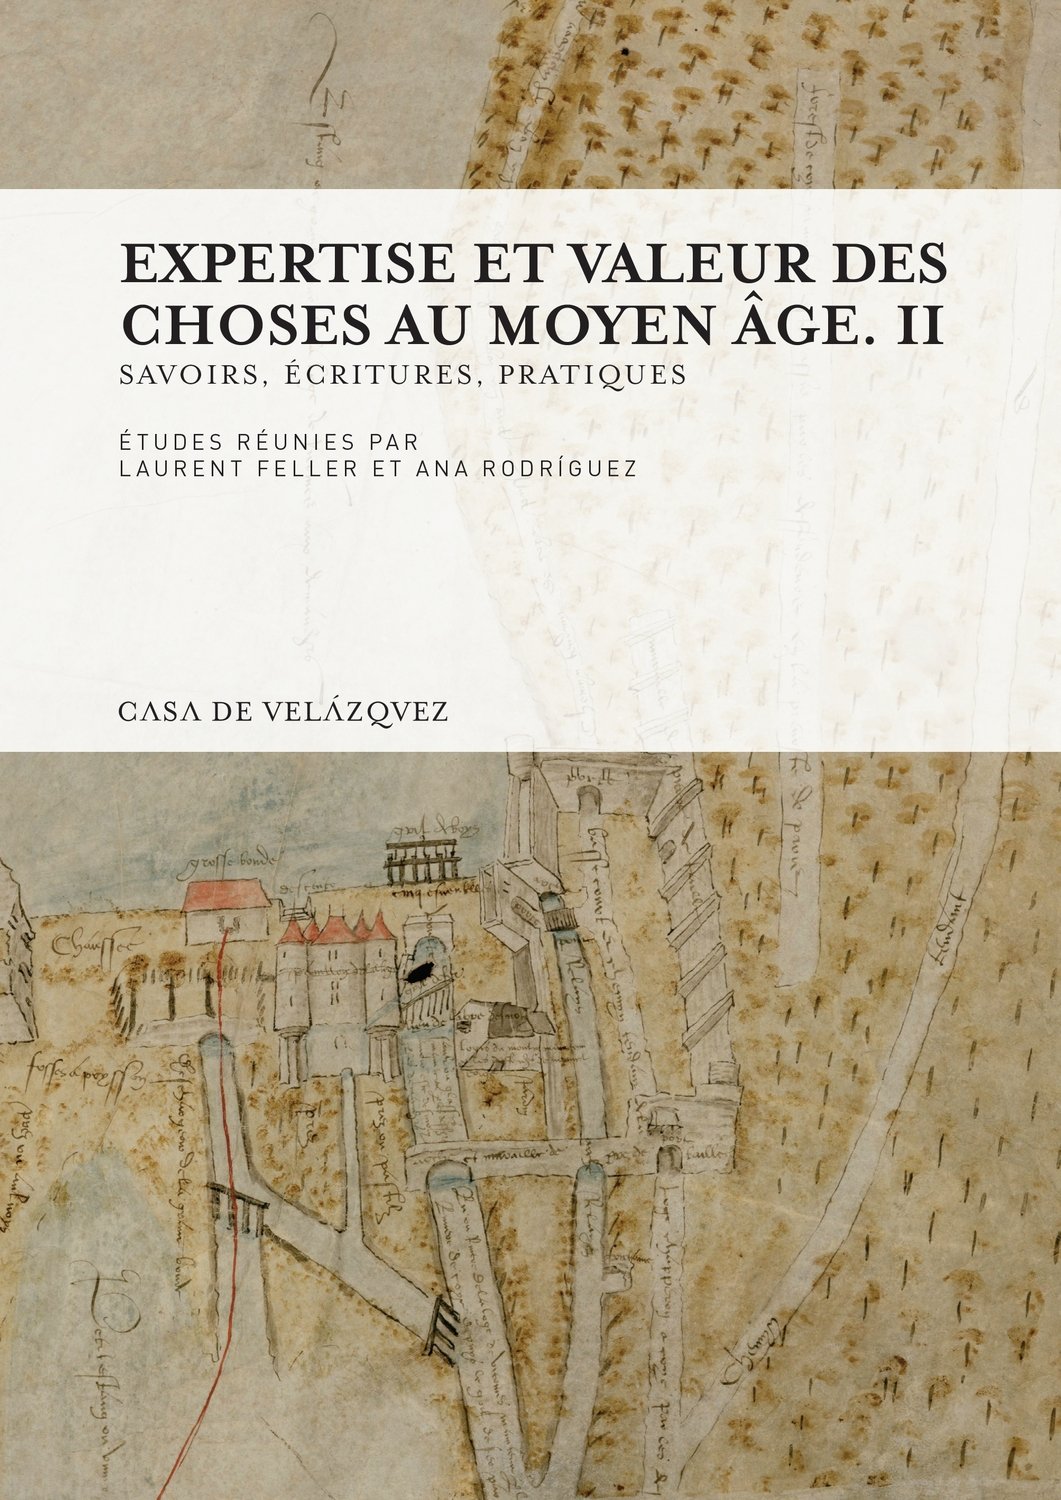 Expertise et valeur des choses au Moyen Age. Volume 2, Savoirs, écritures, pratiques, 2016, 472 p.